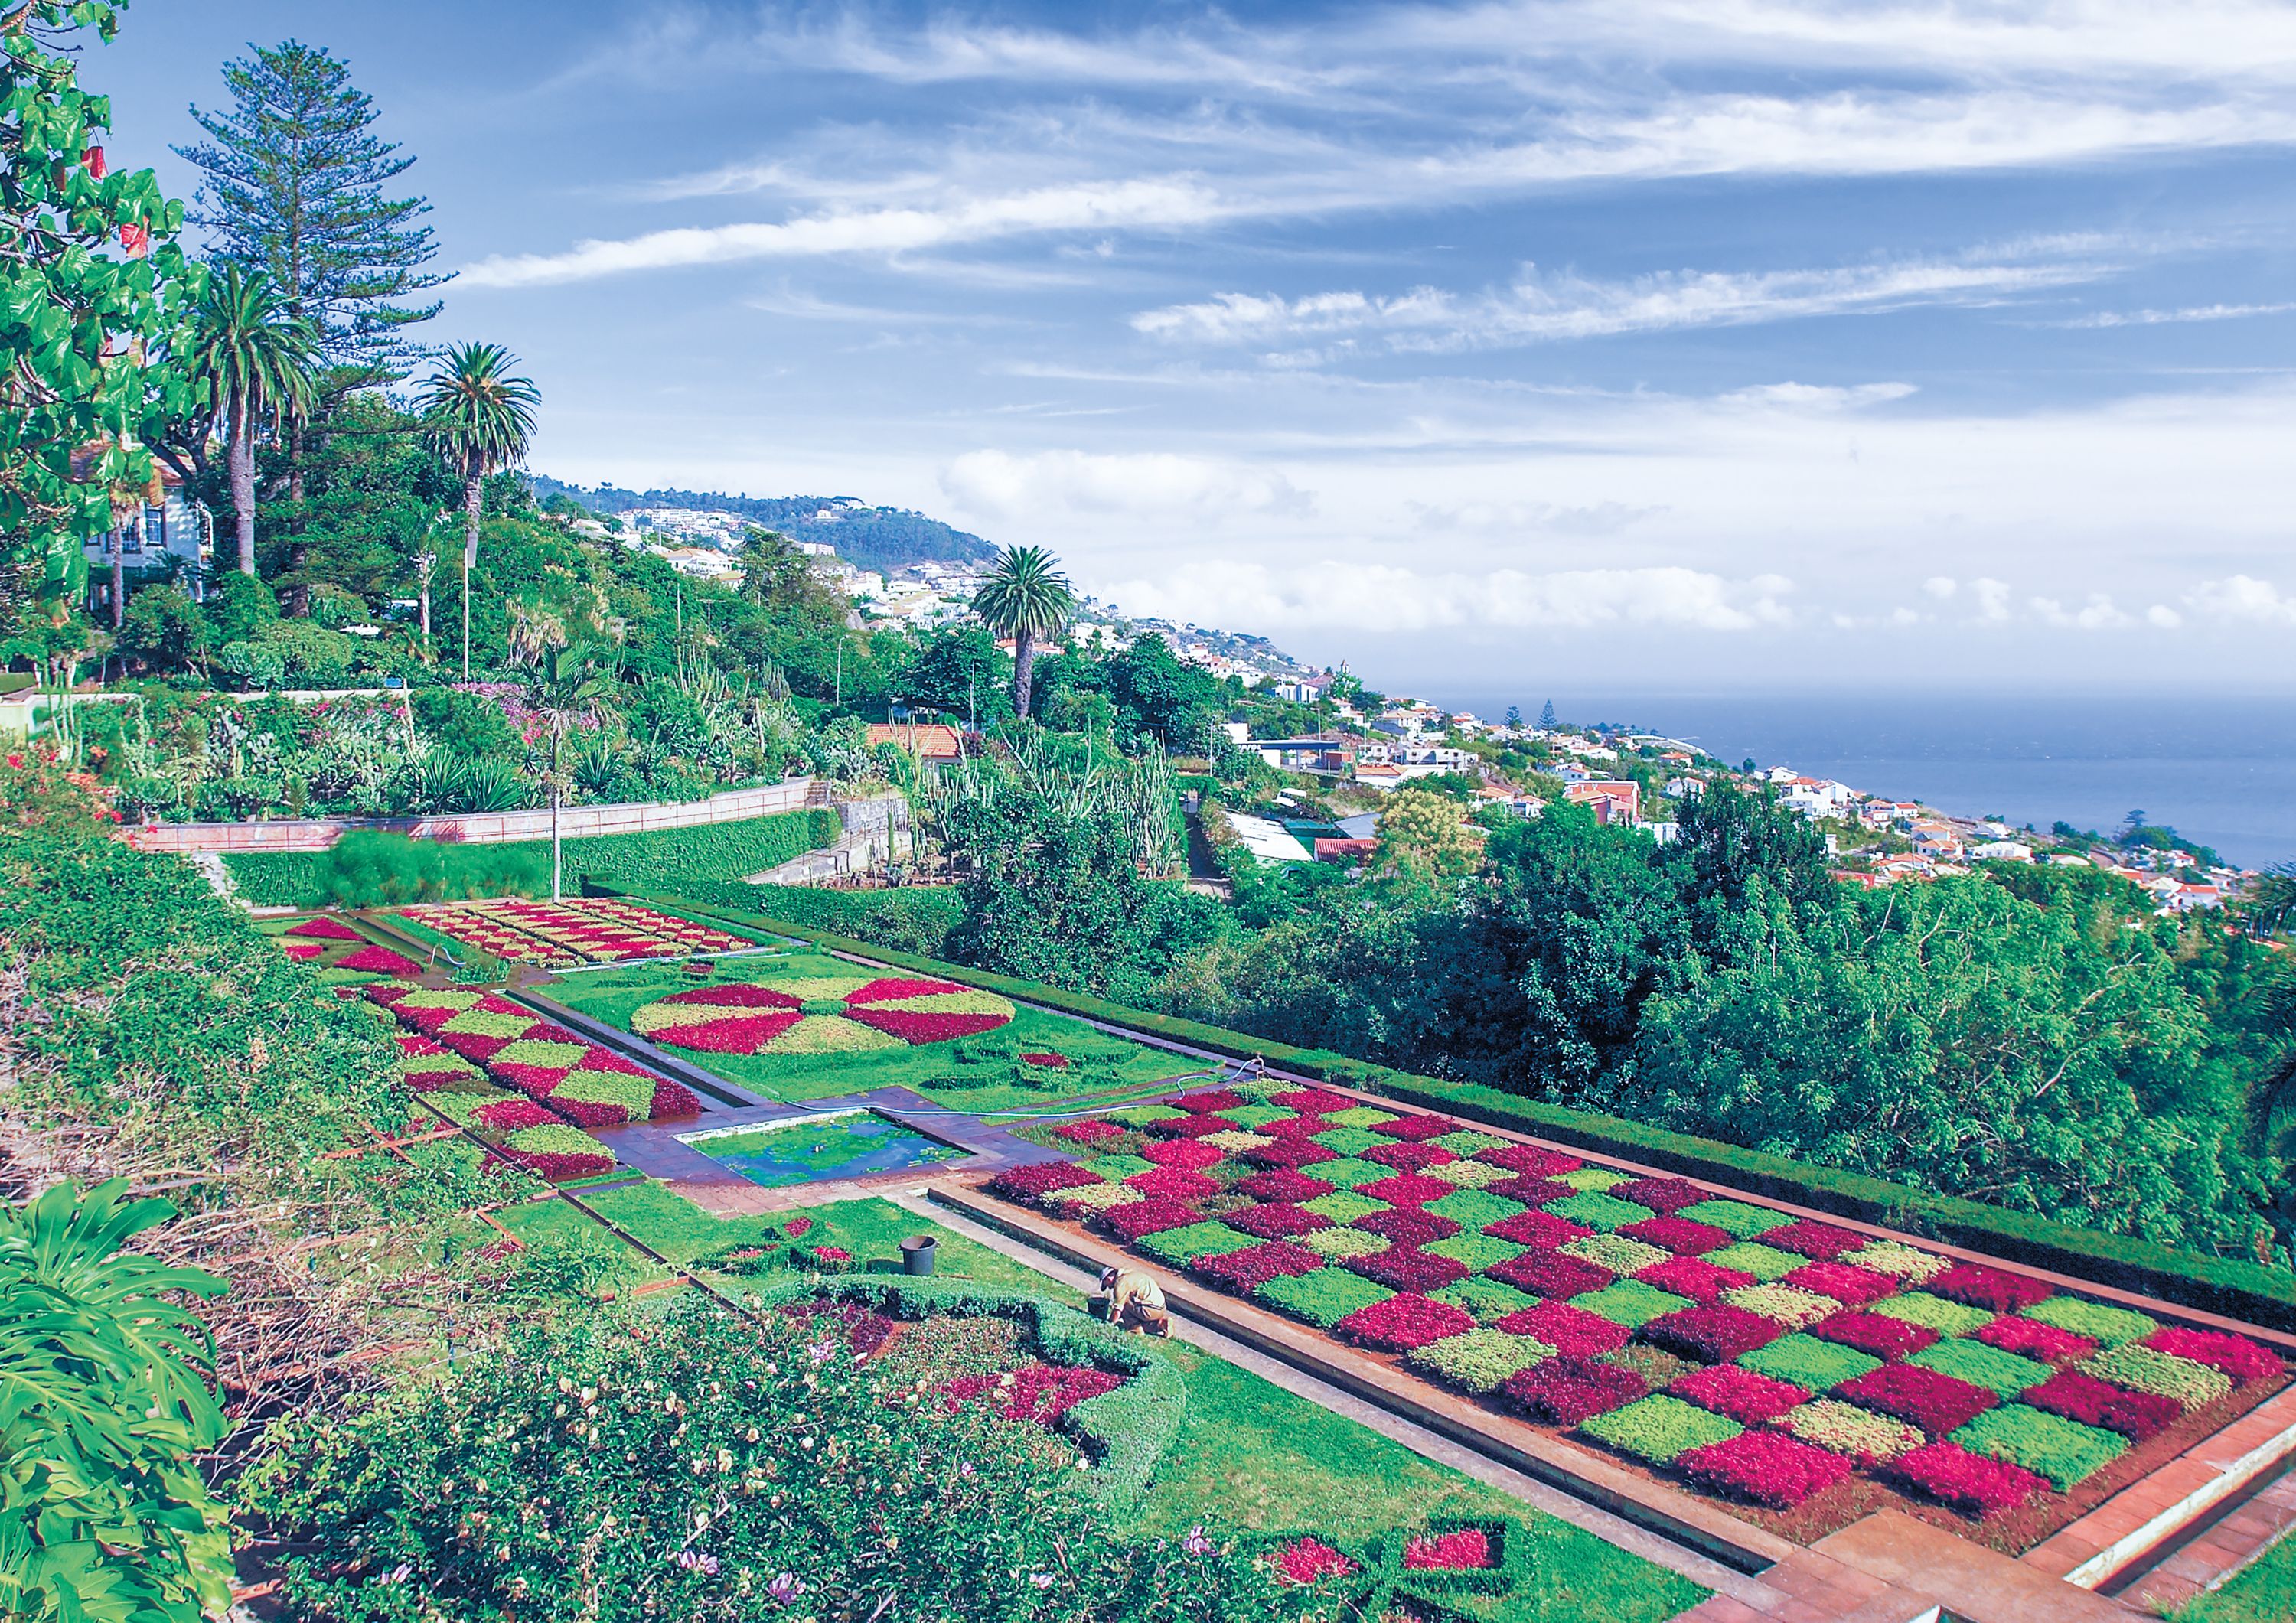 Gardens of Madeira